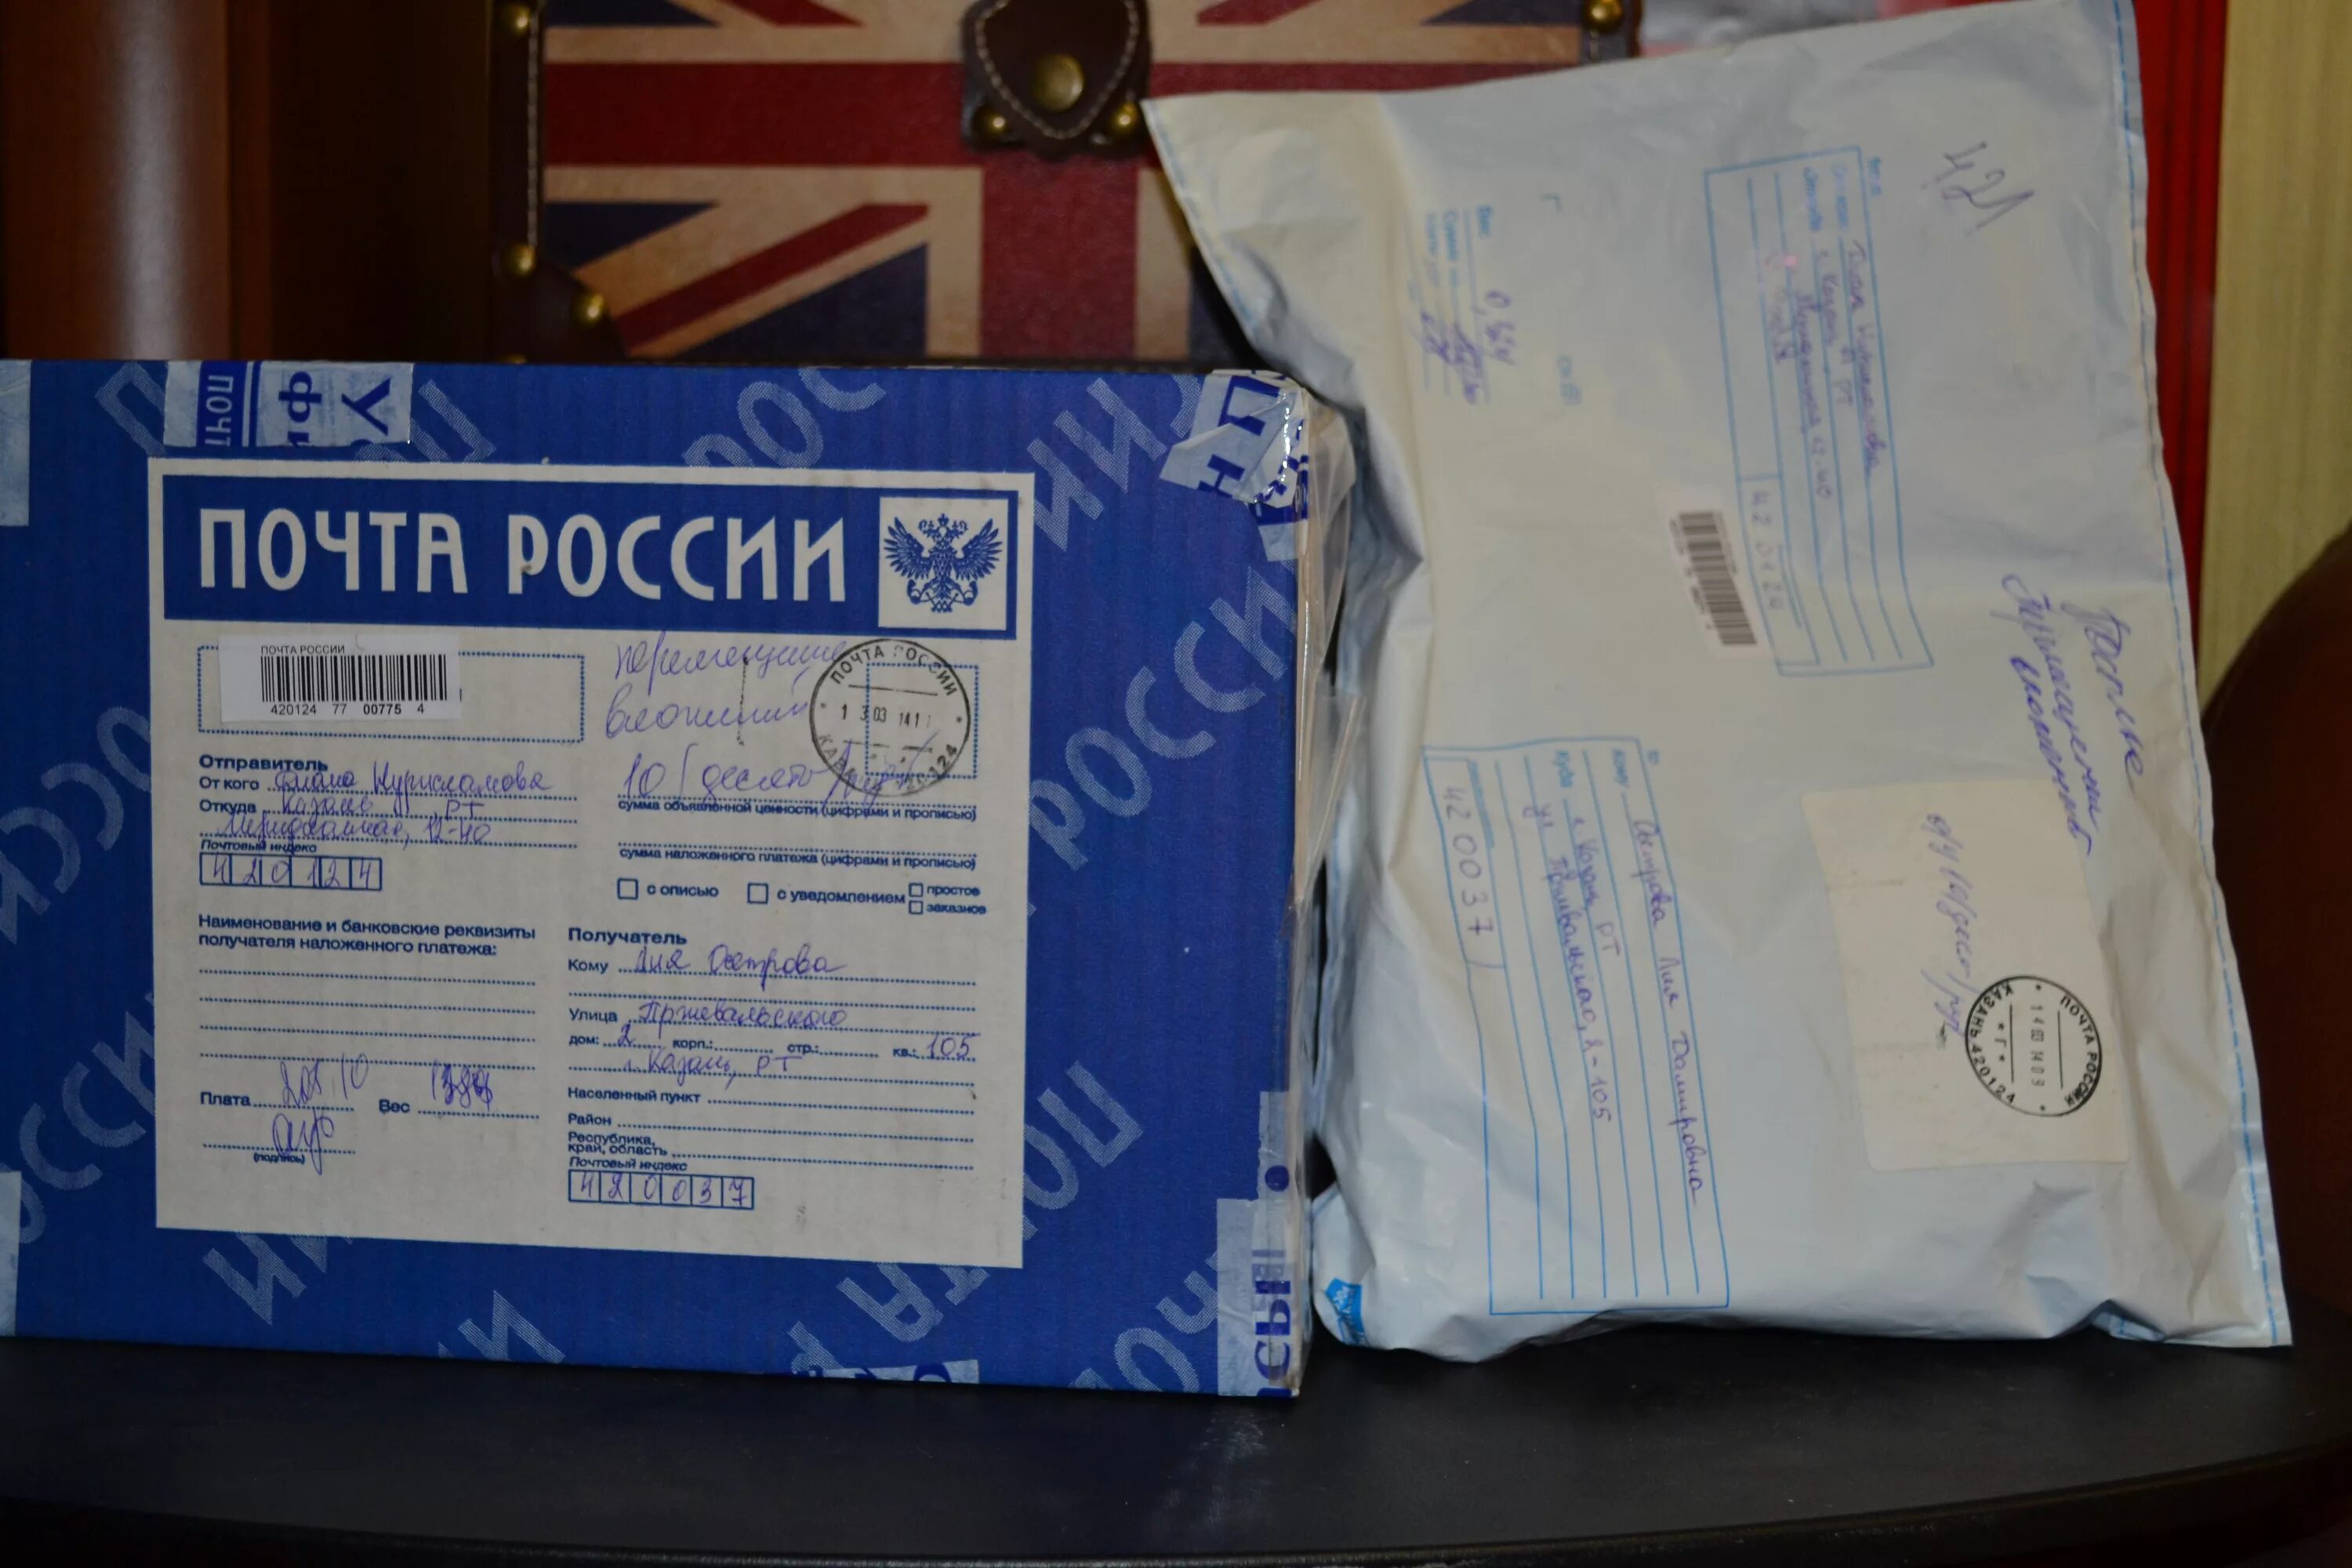 Отправить посылку 60 кг. Упаковка посылки. Бандероль почта России. Посылка в пакете почта России. Коробка для отправки посылки.